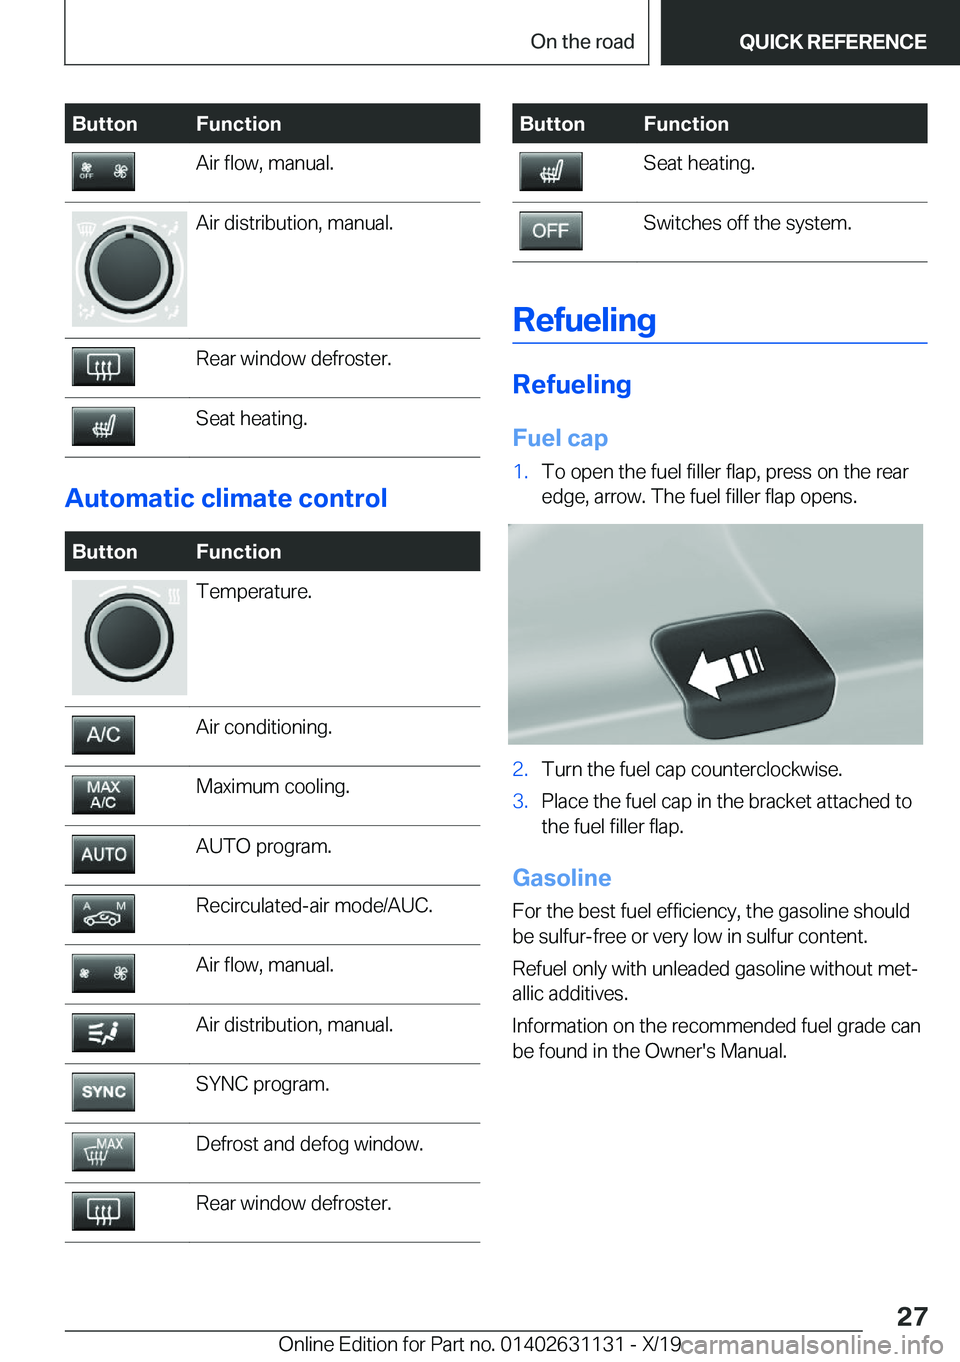 BMW X1 2020 Owners Manual �B�u�t�t�o�n�F�u�n�c�t�i�o�n�A�i�r��f�l�o�w�,��m�a�n�u�a�l�.�A�i�r��d�i�s�t�r�i�b�u�t�i�o�n�,��m�a�n�u�a�l�.�R�e�a�r��w�i�n�d�o�w��d�e�f�r�o�s�t�e�r�.�S�e�a�t��h�e�a�t�i�n�g�.
�A�u�t�o�m�a�t�i�